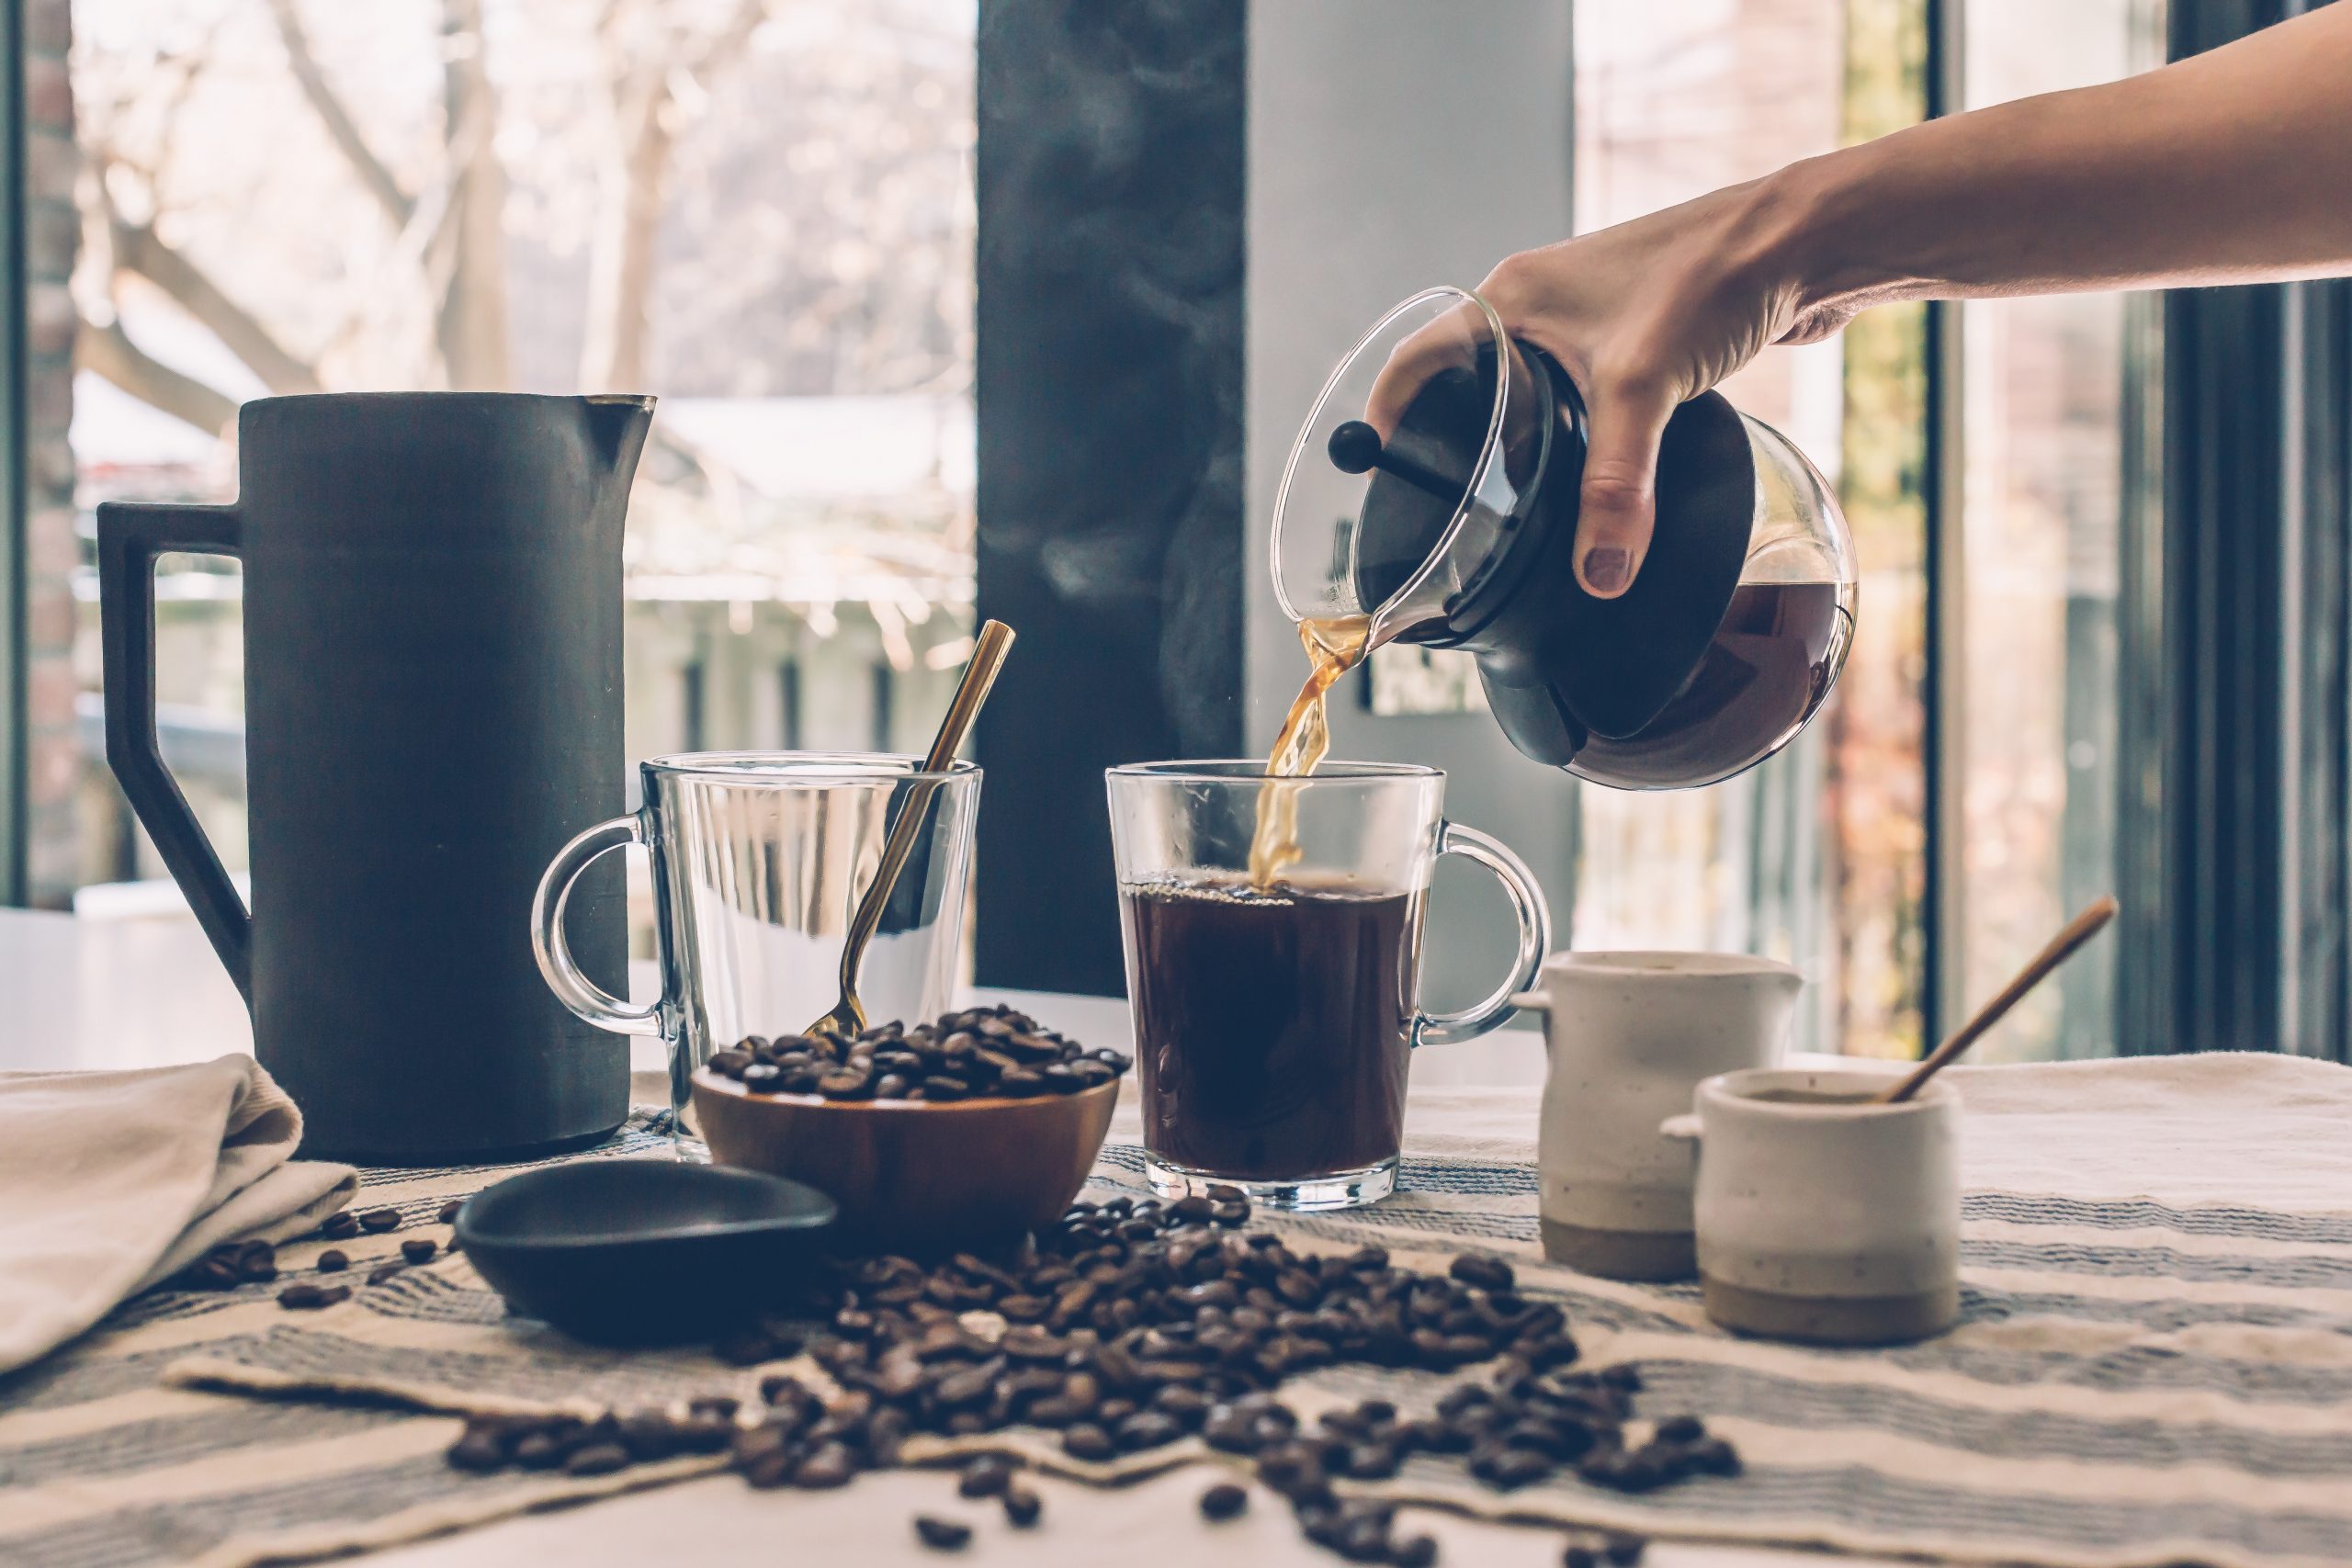 Coffee and tea – a perfect gift idea